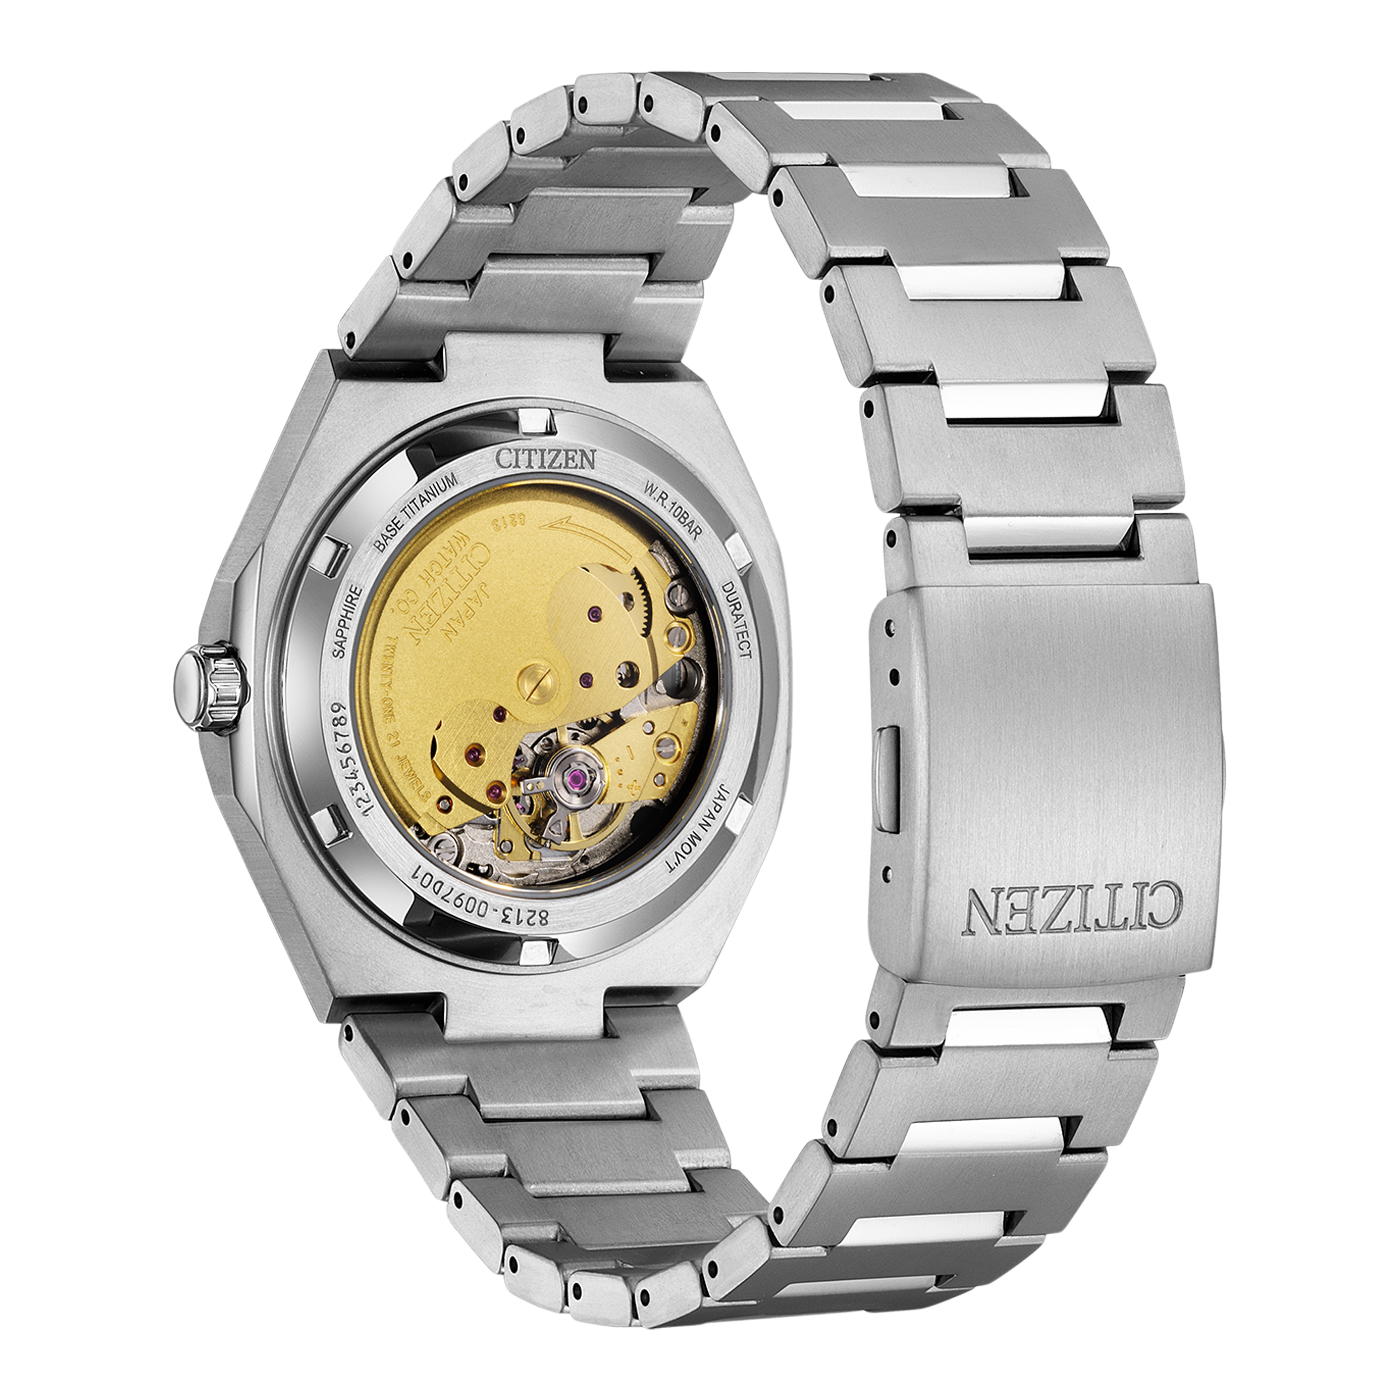 Citizen NJ0180-80L Zenshin Super Titanium Men's Watch Automatic NJ0180-80L